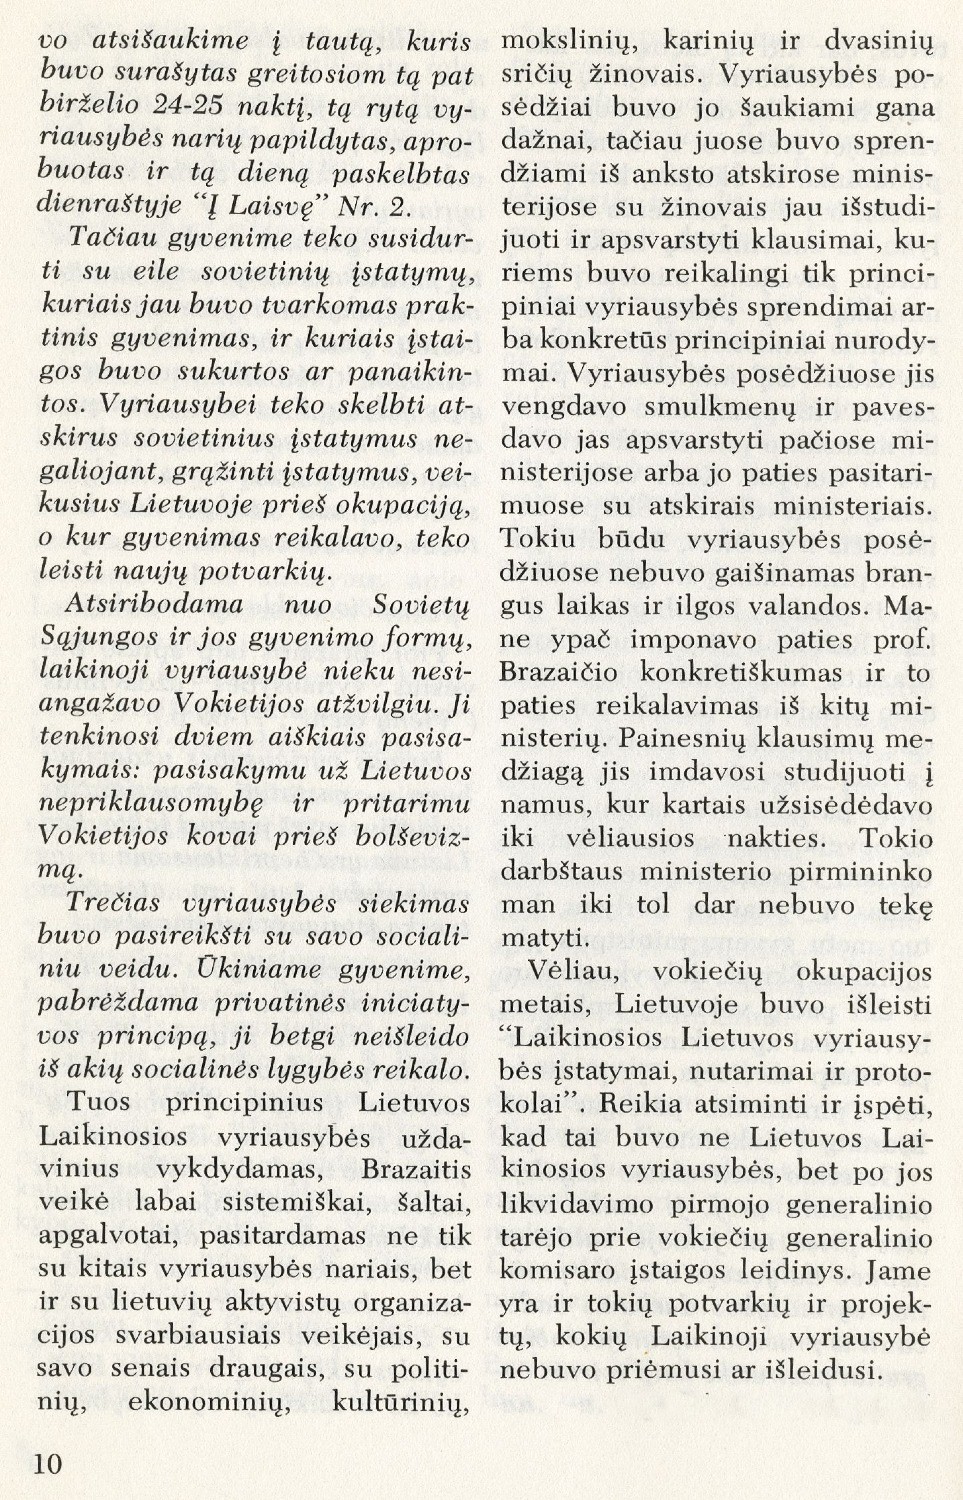 Juozas Brazaitis Laikinojoje Lietuvos vyriausybėje / Stasys Raštikis // Į laisvę. – 1975, Nr. 65, p. 7–15.